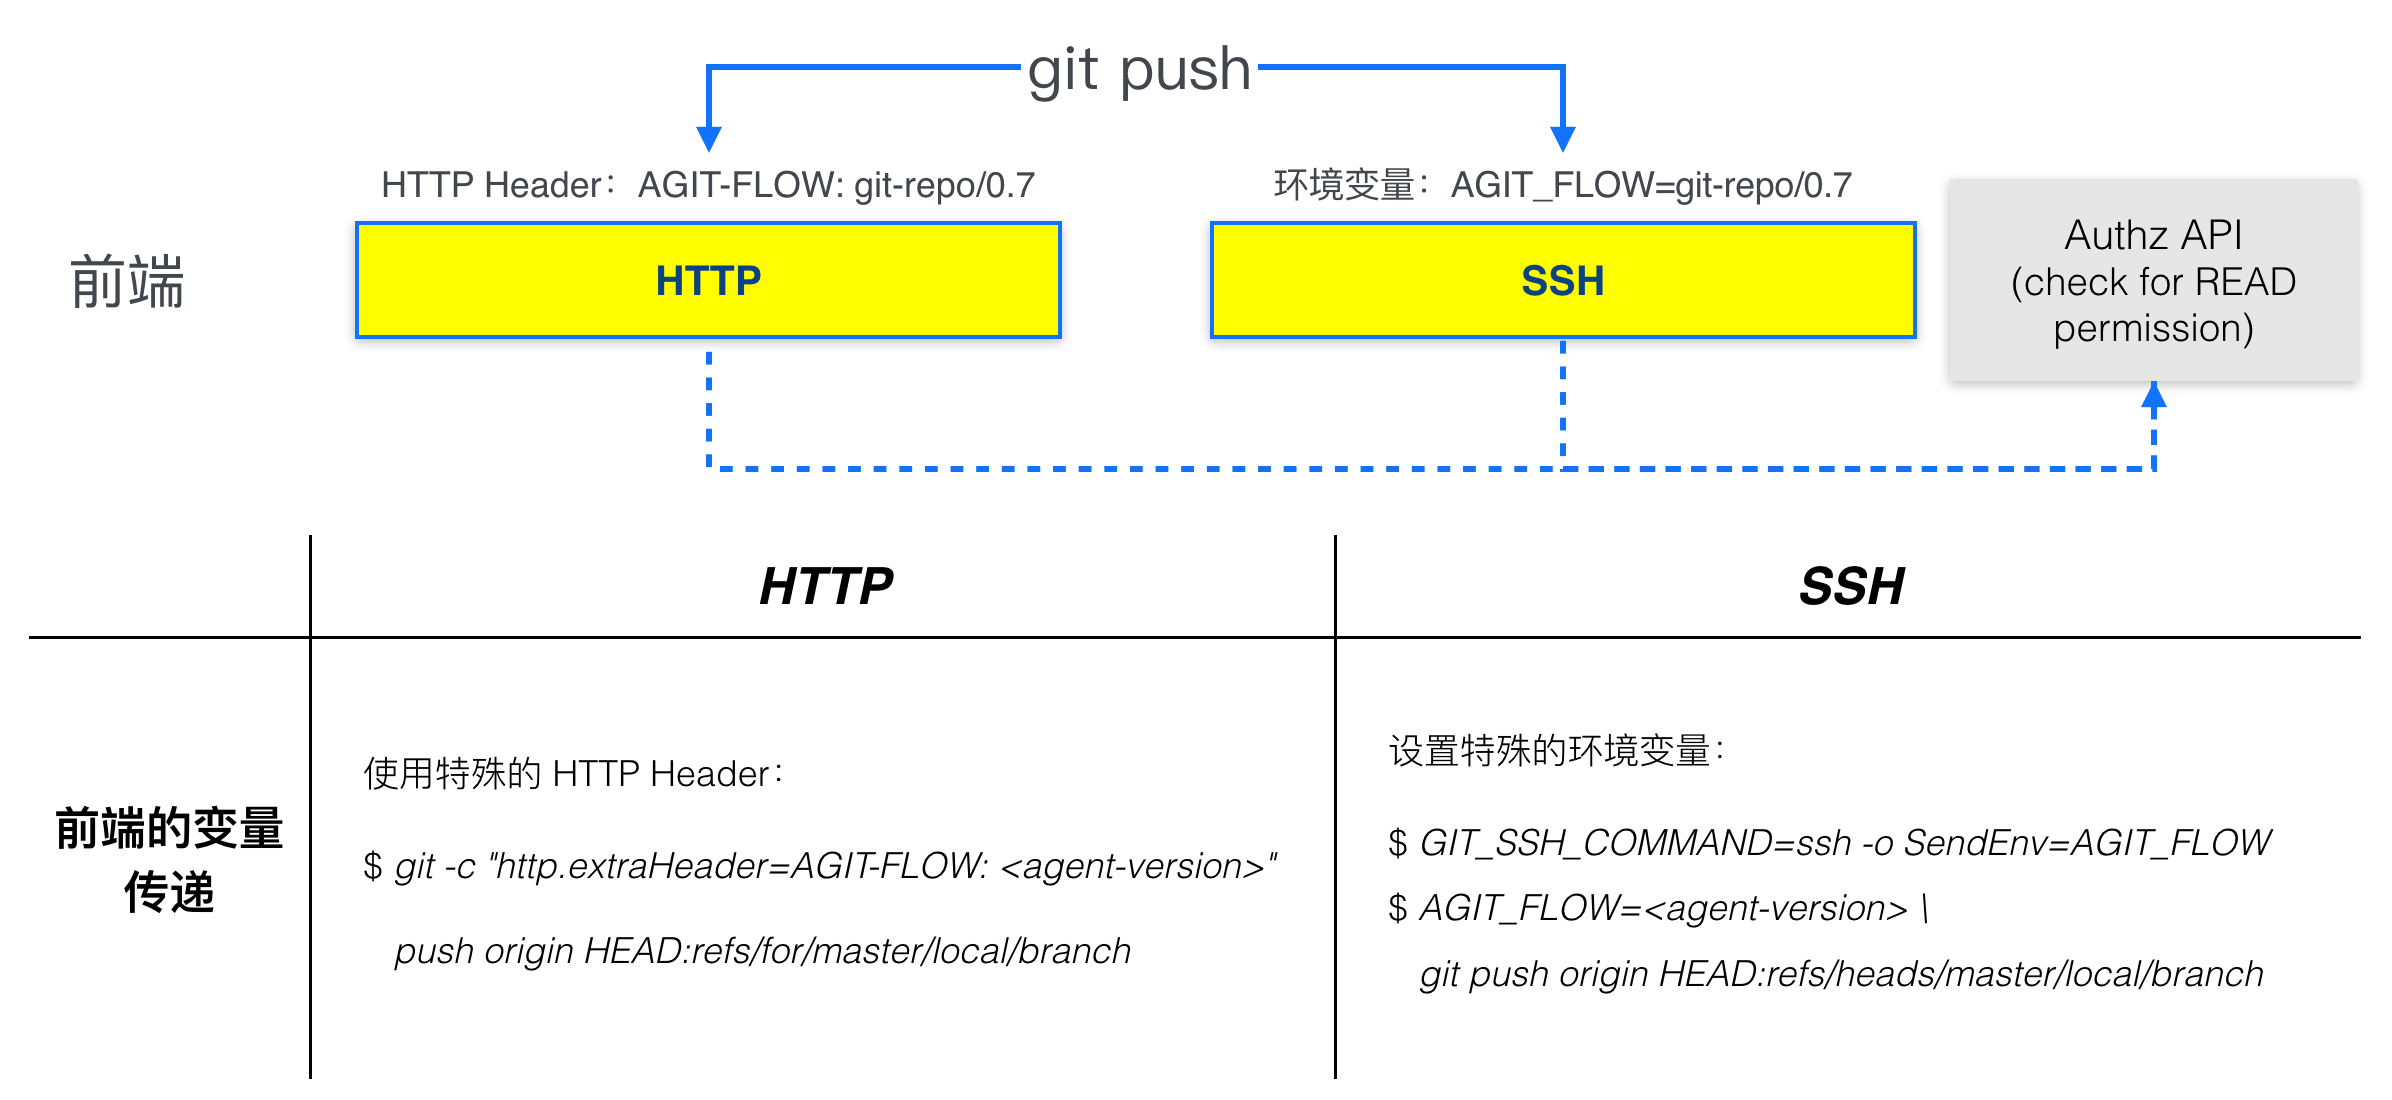 图: AGit-Flow 前端授权模块